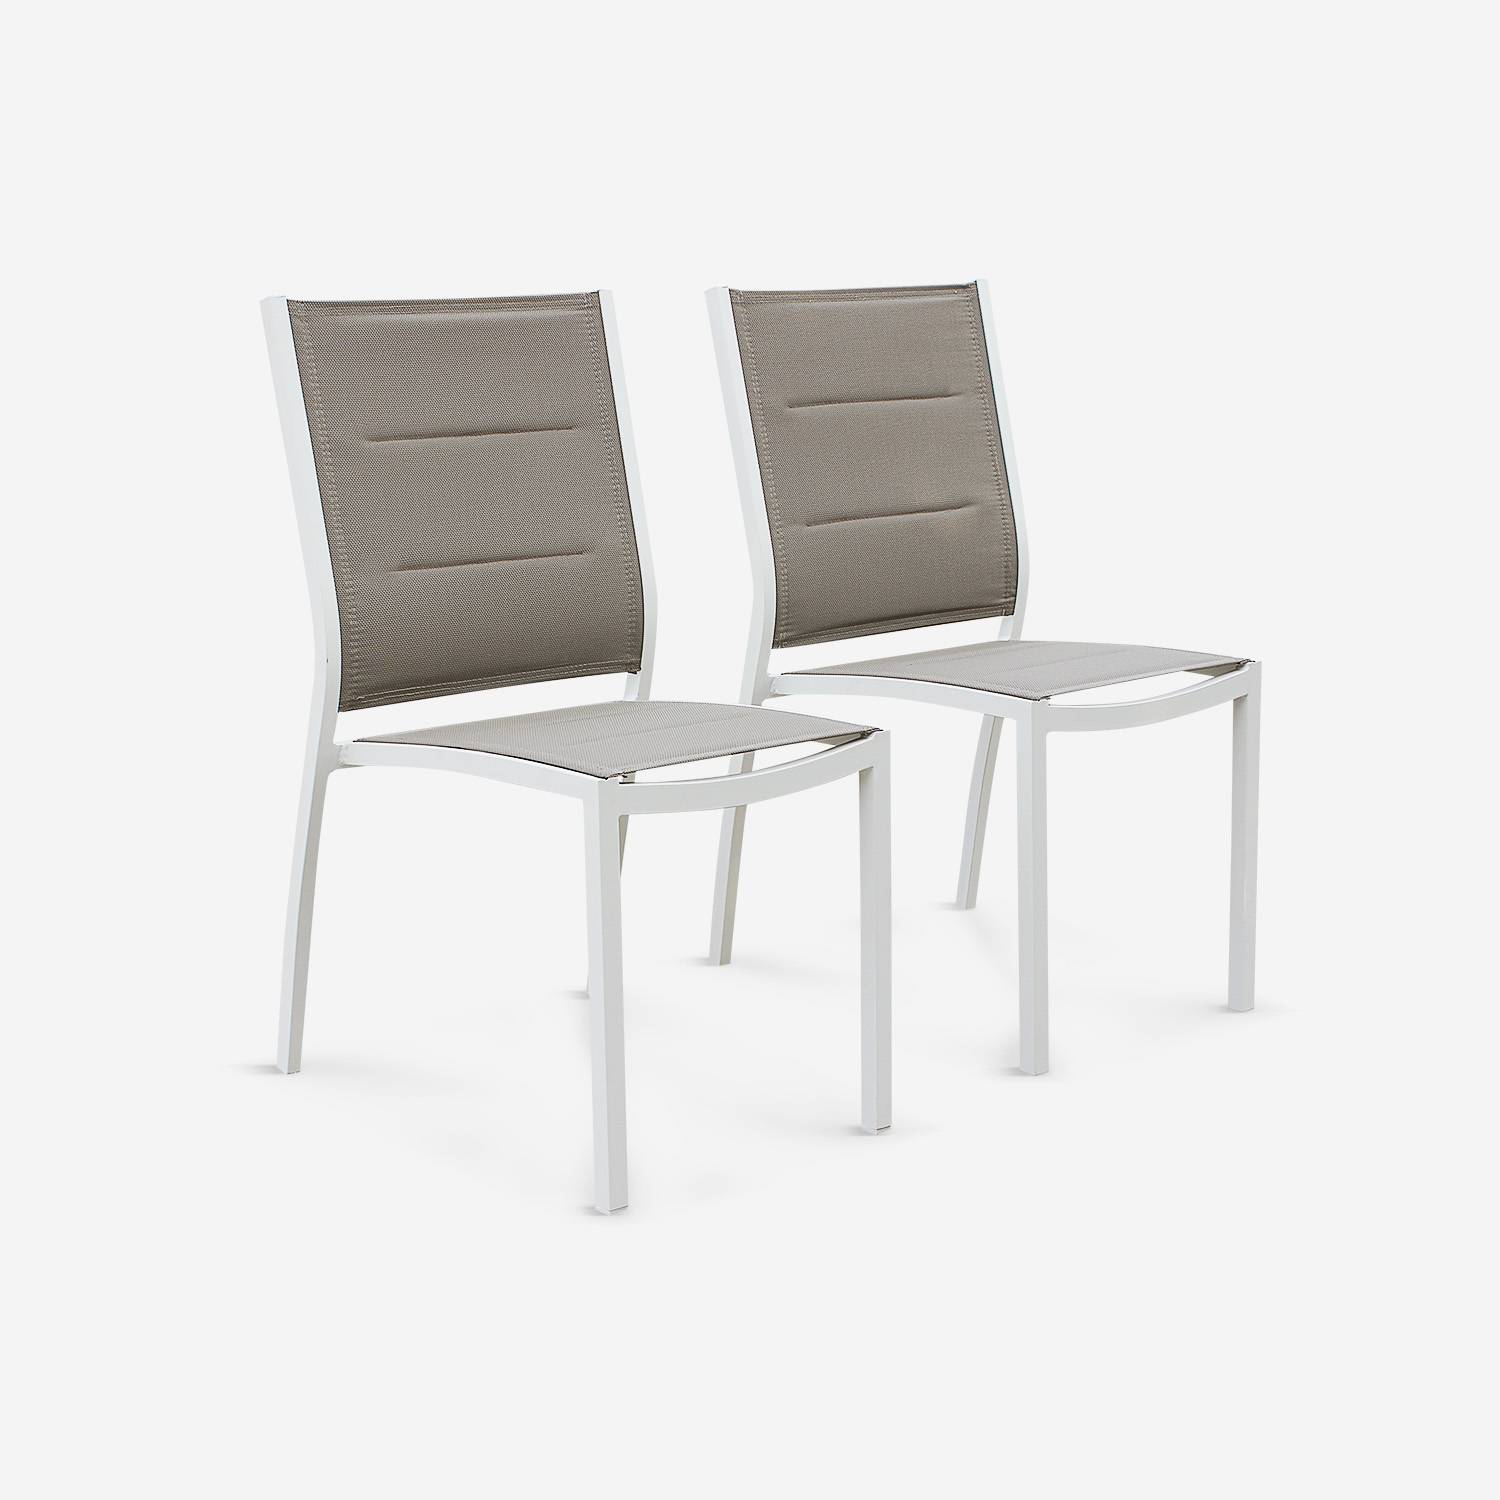 Coppia di sedie Chicago/Odenton in alluminio bianco e textilene colore marrone talpa Photo3